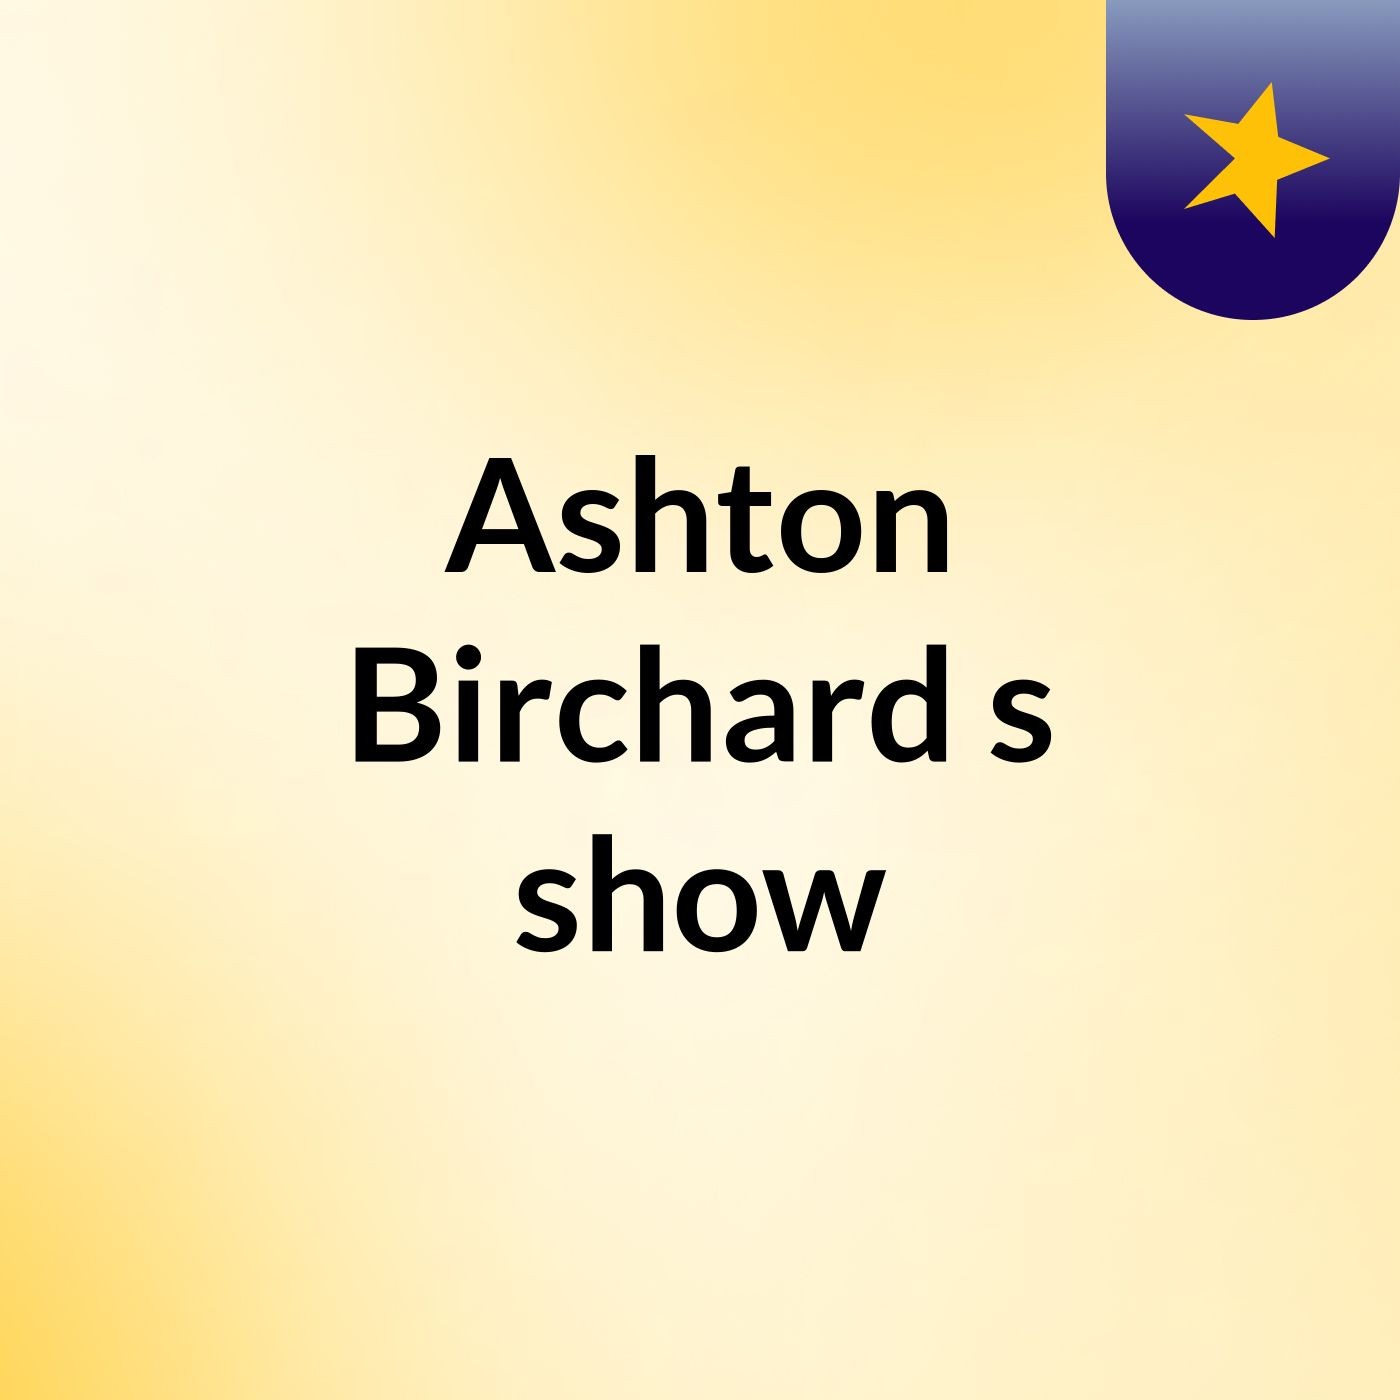 Ashton Birchard's show